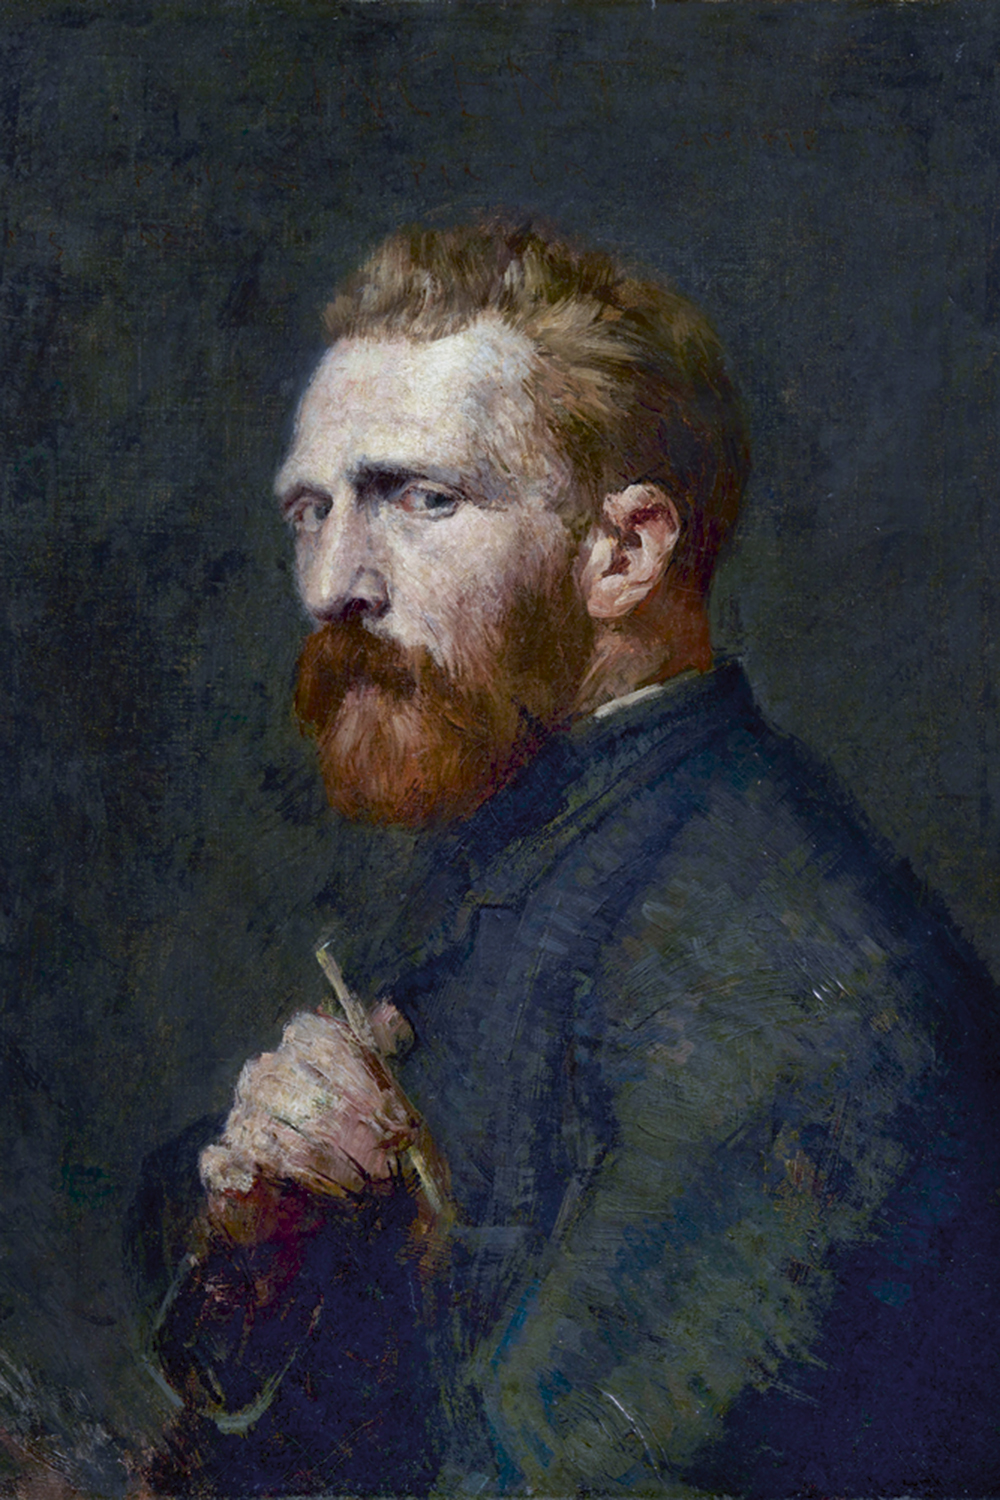 Van Gogh (1853-1890)